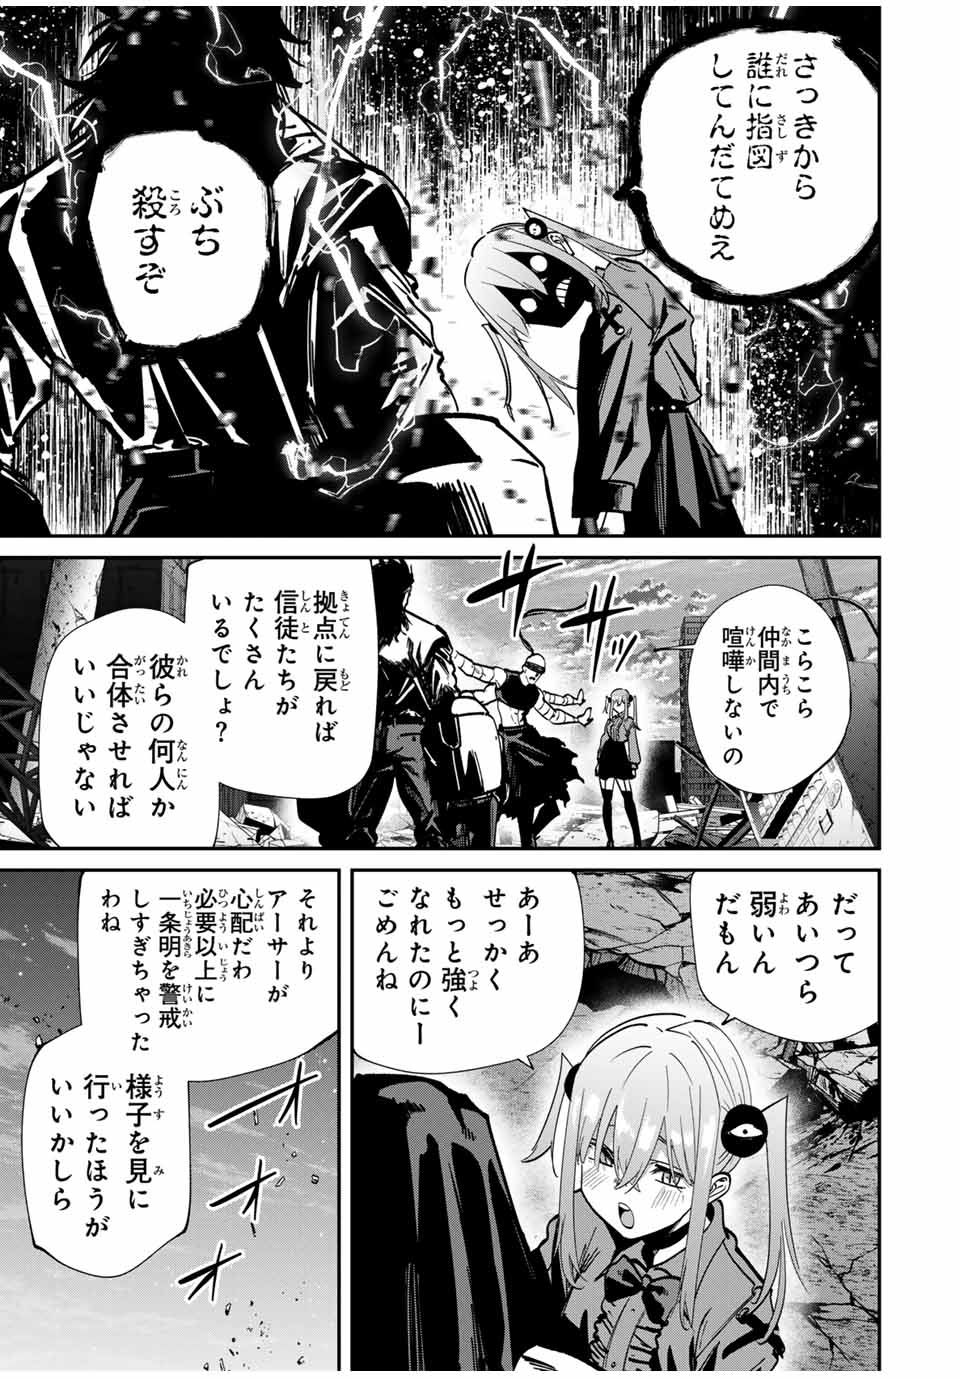 Kono Sekai ga Izure Horobu Koto wo, Ore dake ga Shitte Iru - Chapter 75 - Page 3